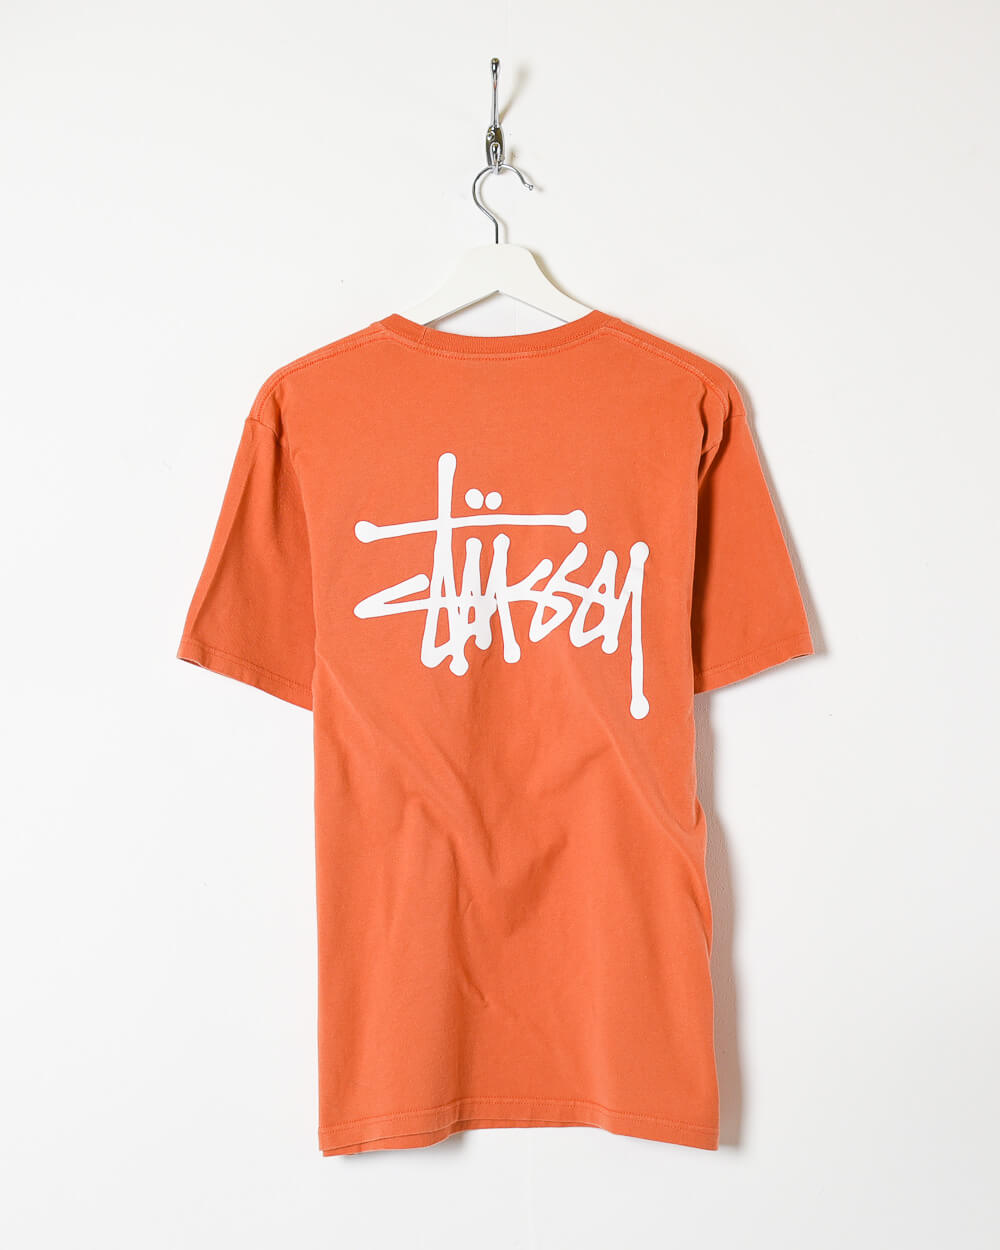 Orange Stussy T-Shirt - Medium